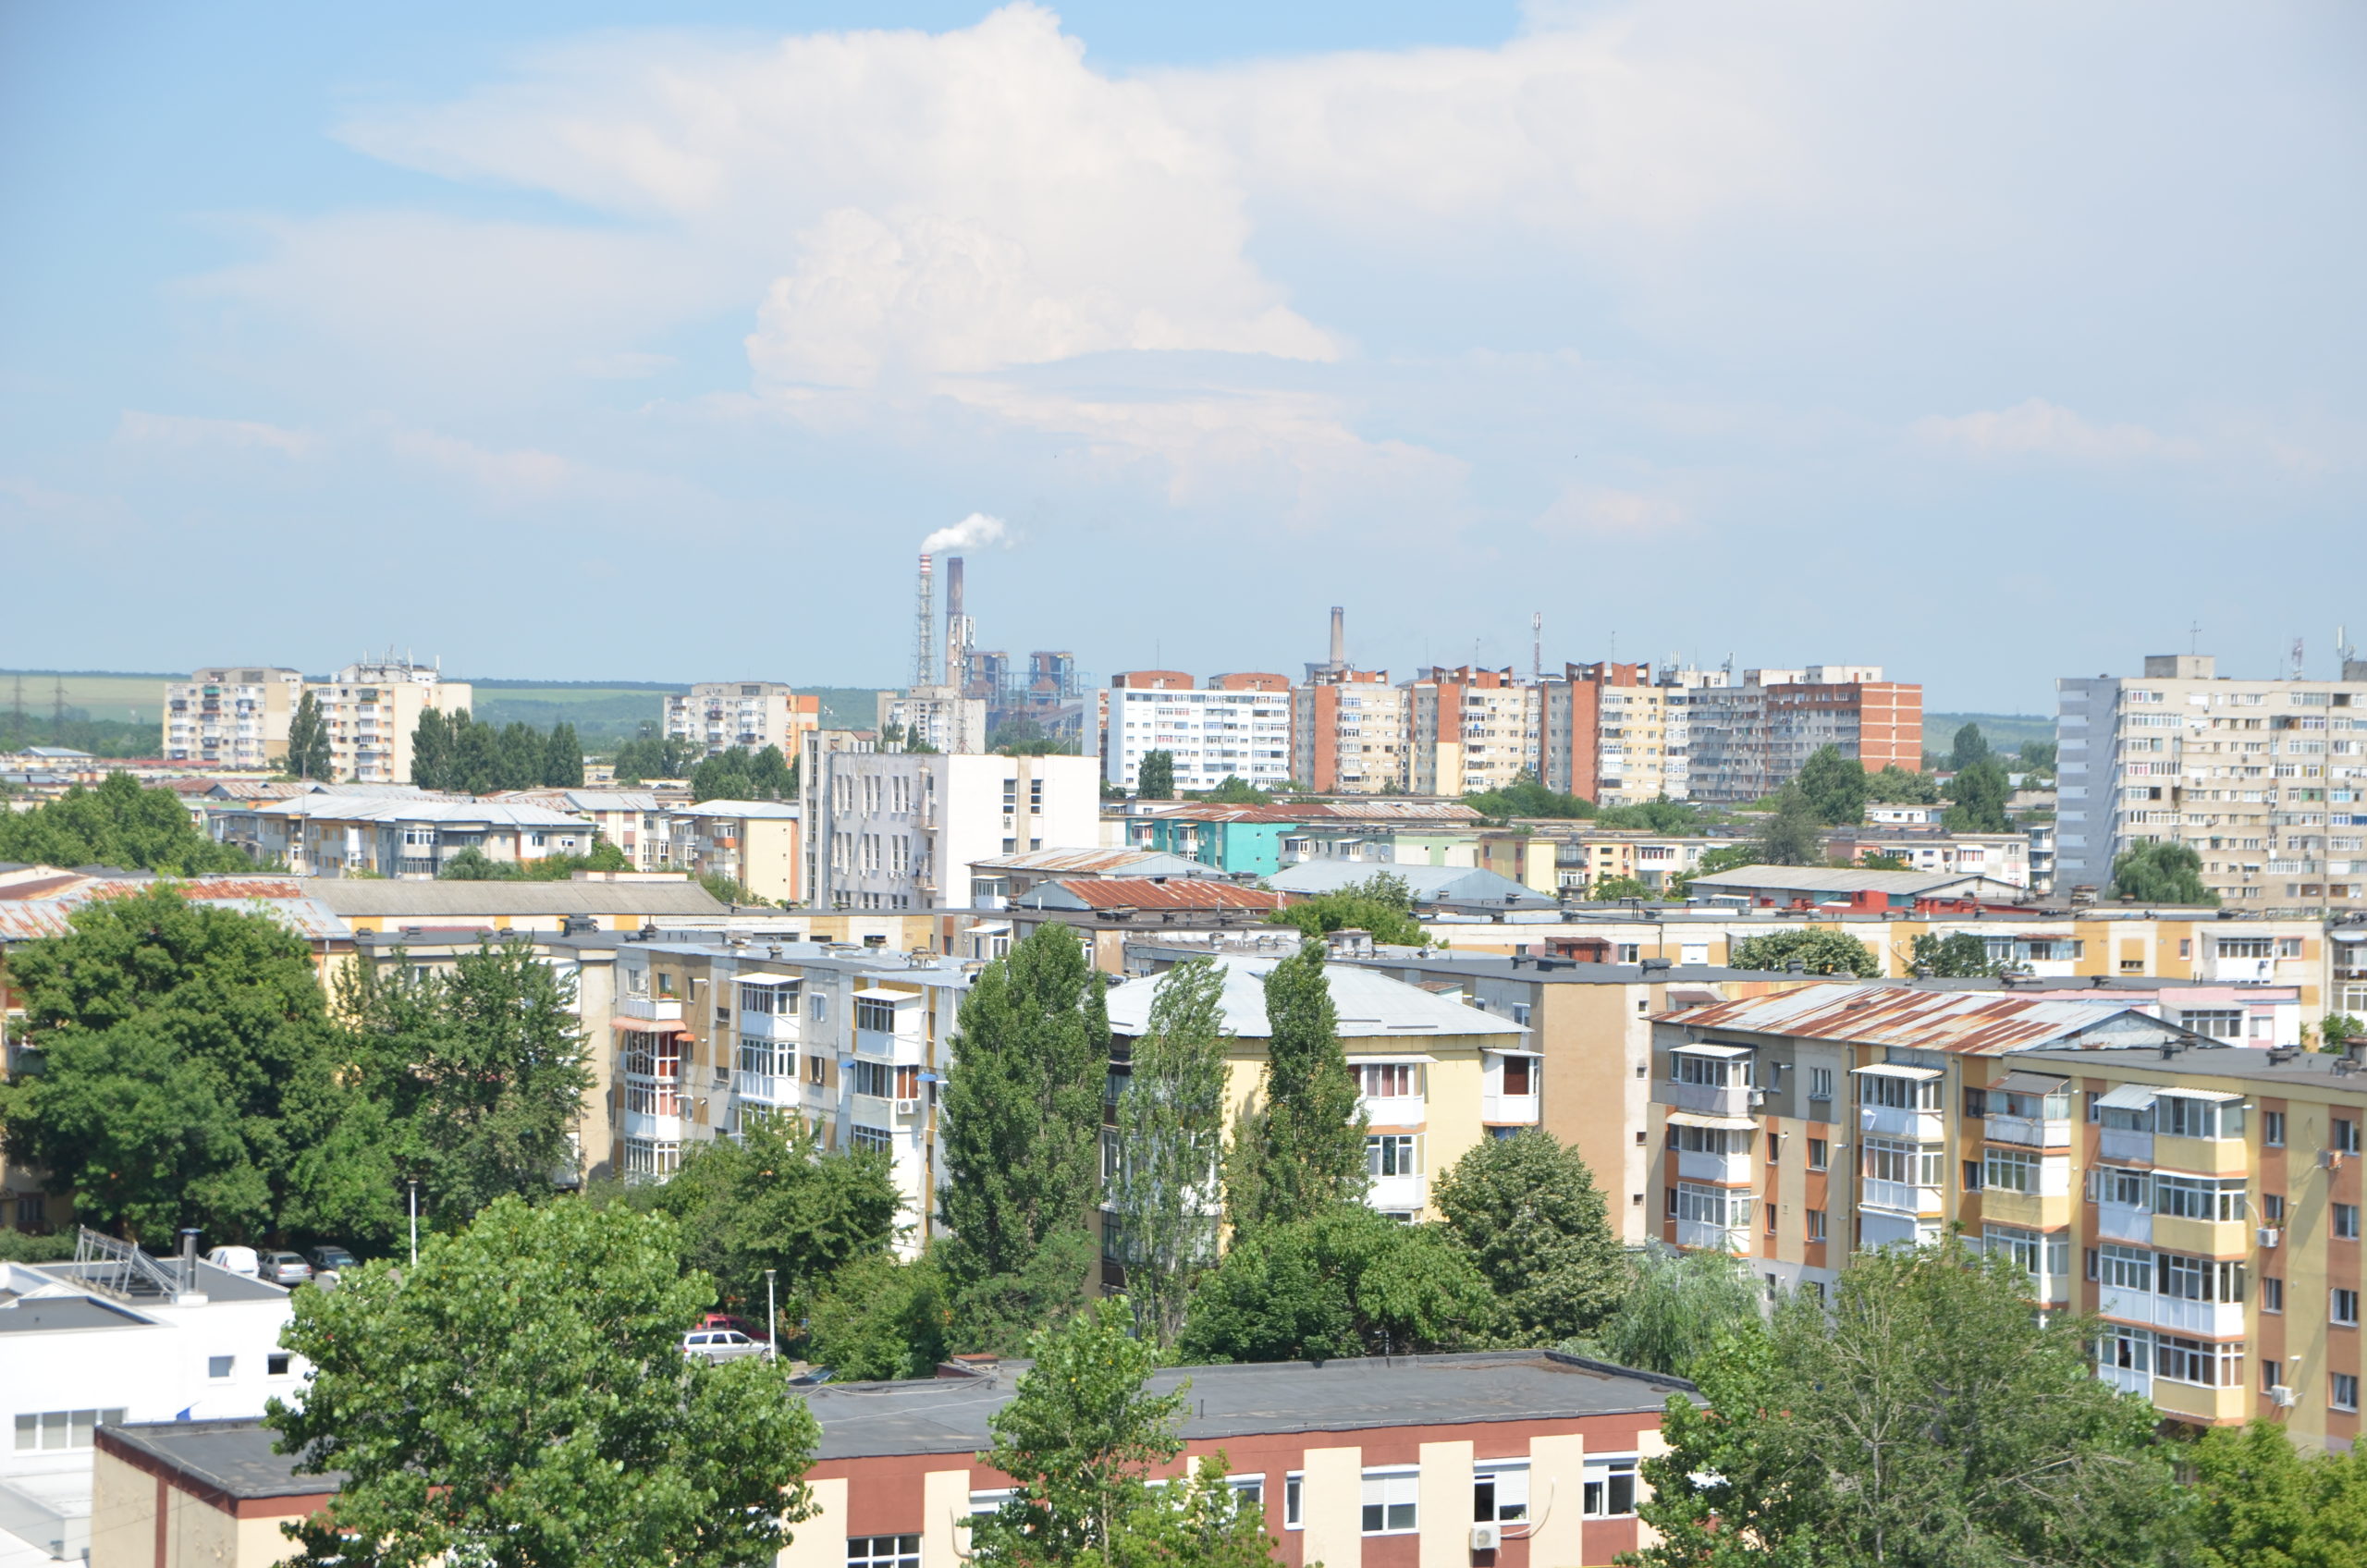 Taxe şi impozite mai mari din 2023. Impozitul pe locuinţă în municipiul Craiova va creşte semnificativ pentru imobilele din zonele A și B.